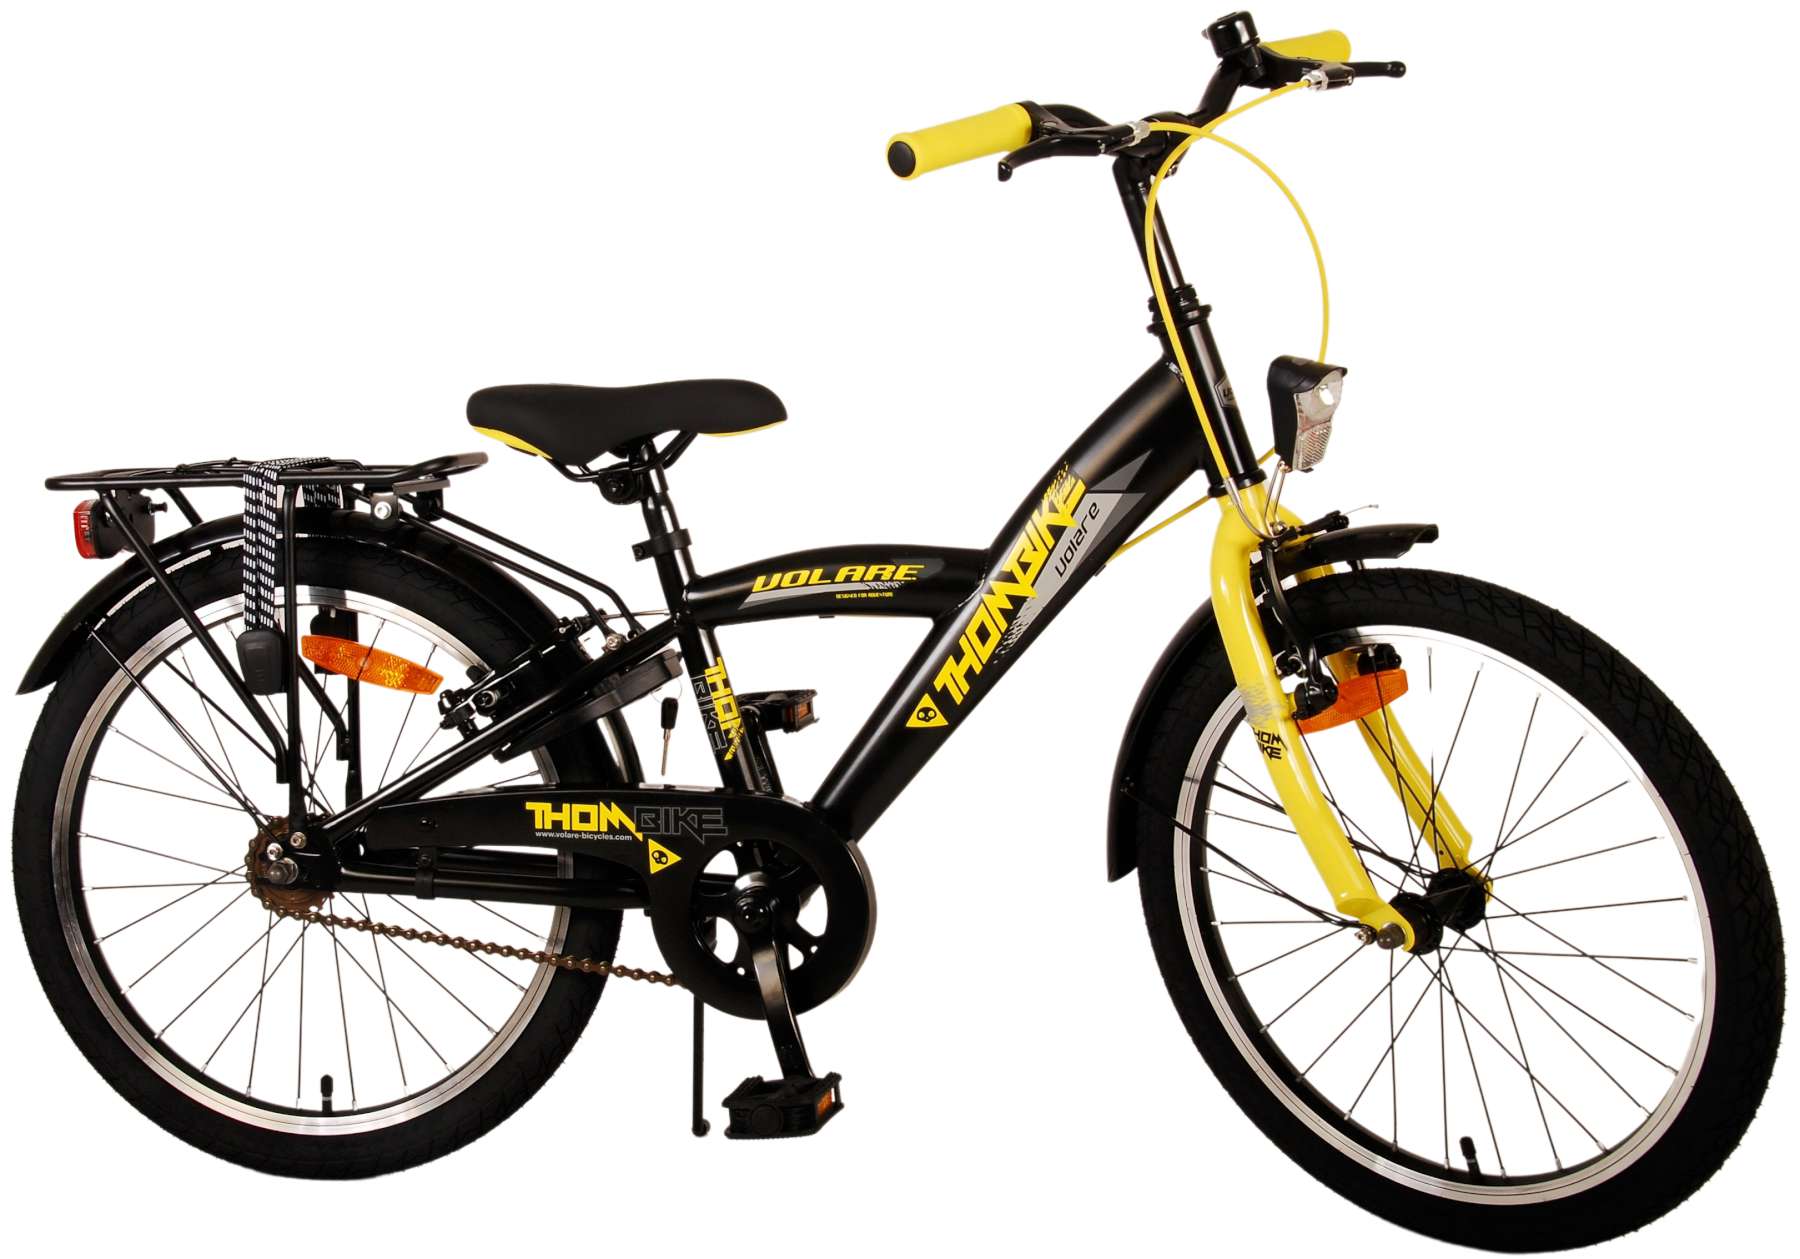 Kinderfahrrad Thombike für Jungen 20 Zoll Kinderrad in Schwarz Gelb